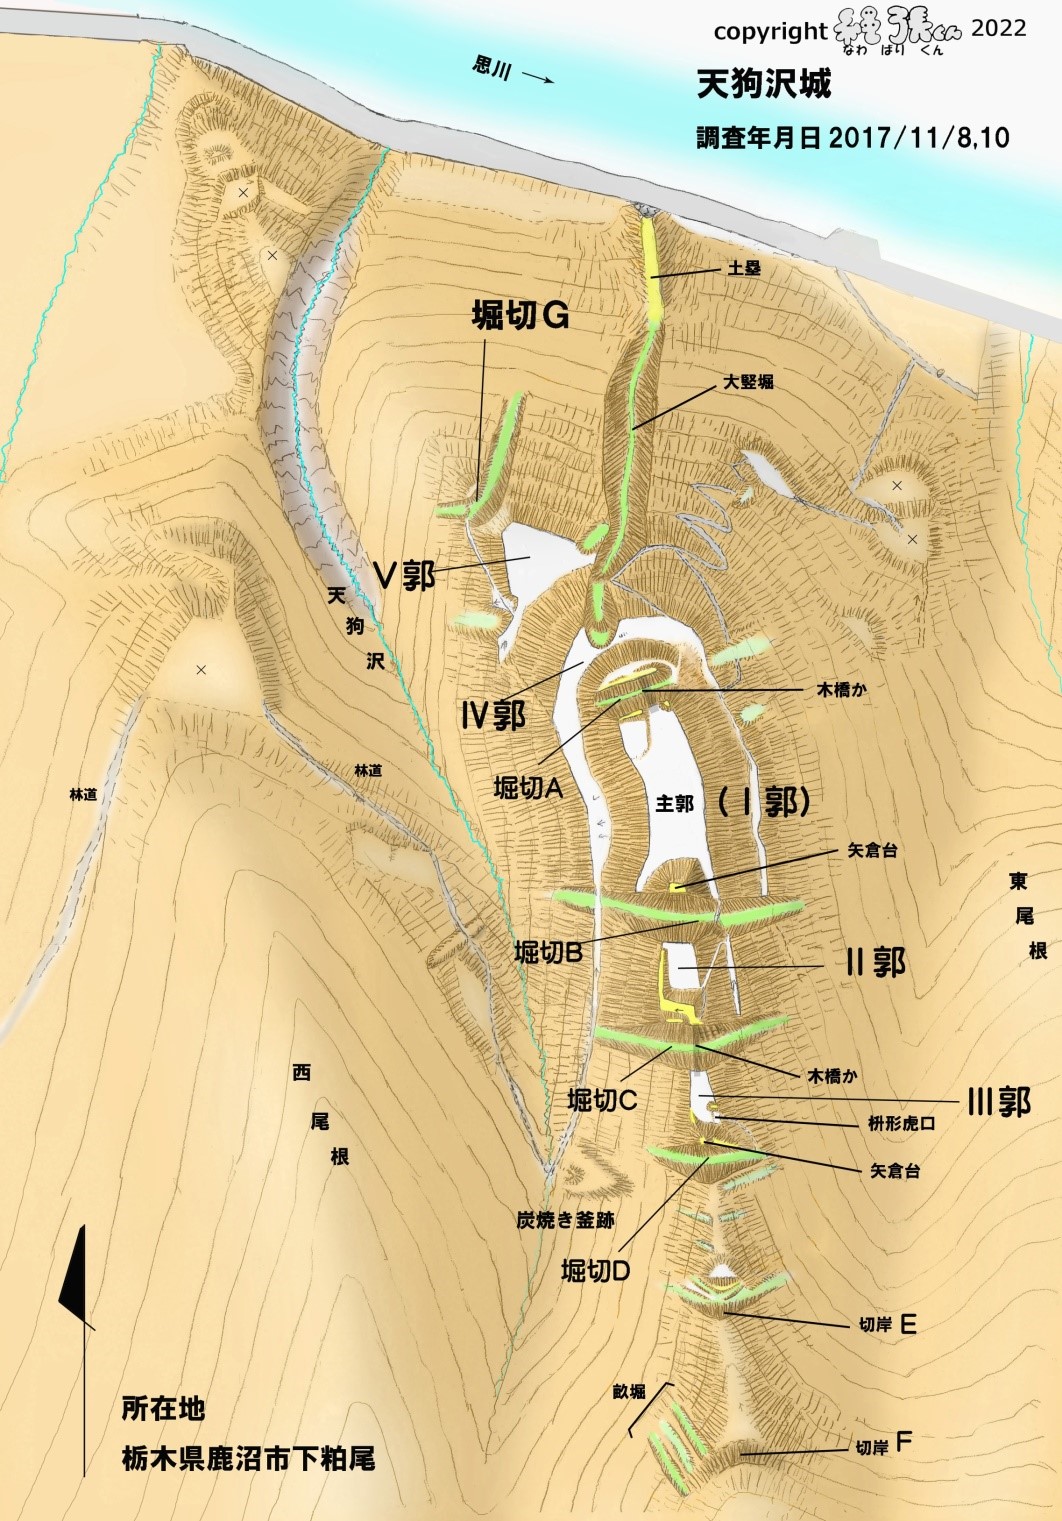 図1－天狗沢城縄張り図（上が北）